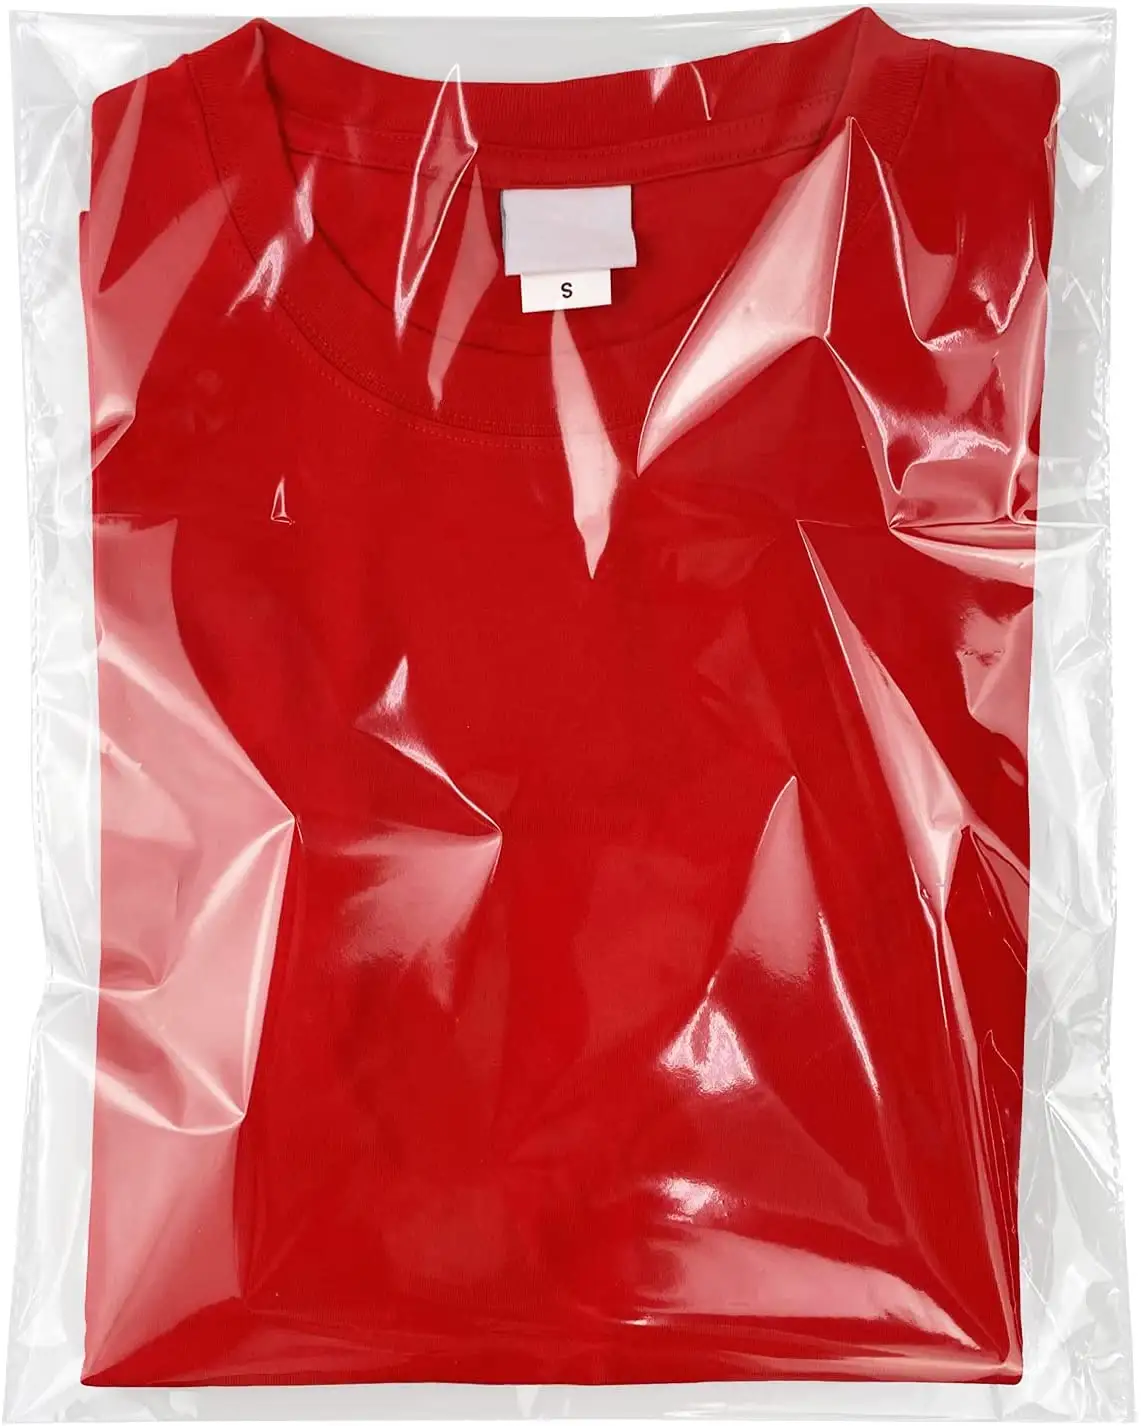 透明な再封可能なセロハンビニール袋シャツ、衣類用の自己粘着性包装